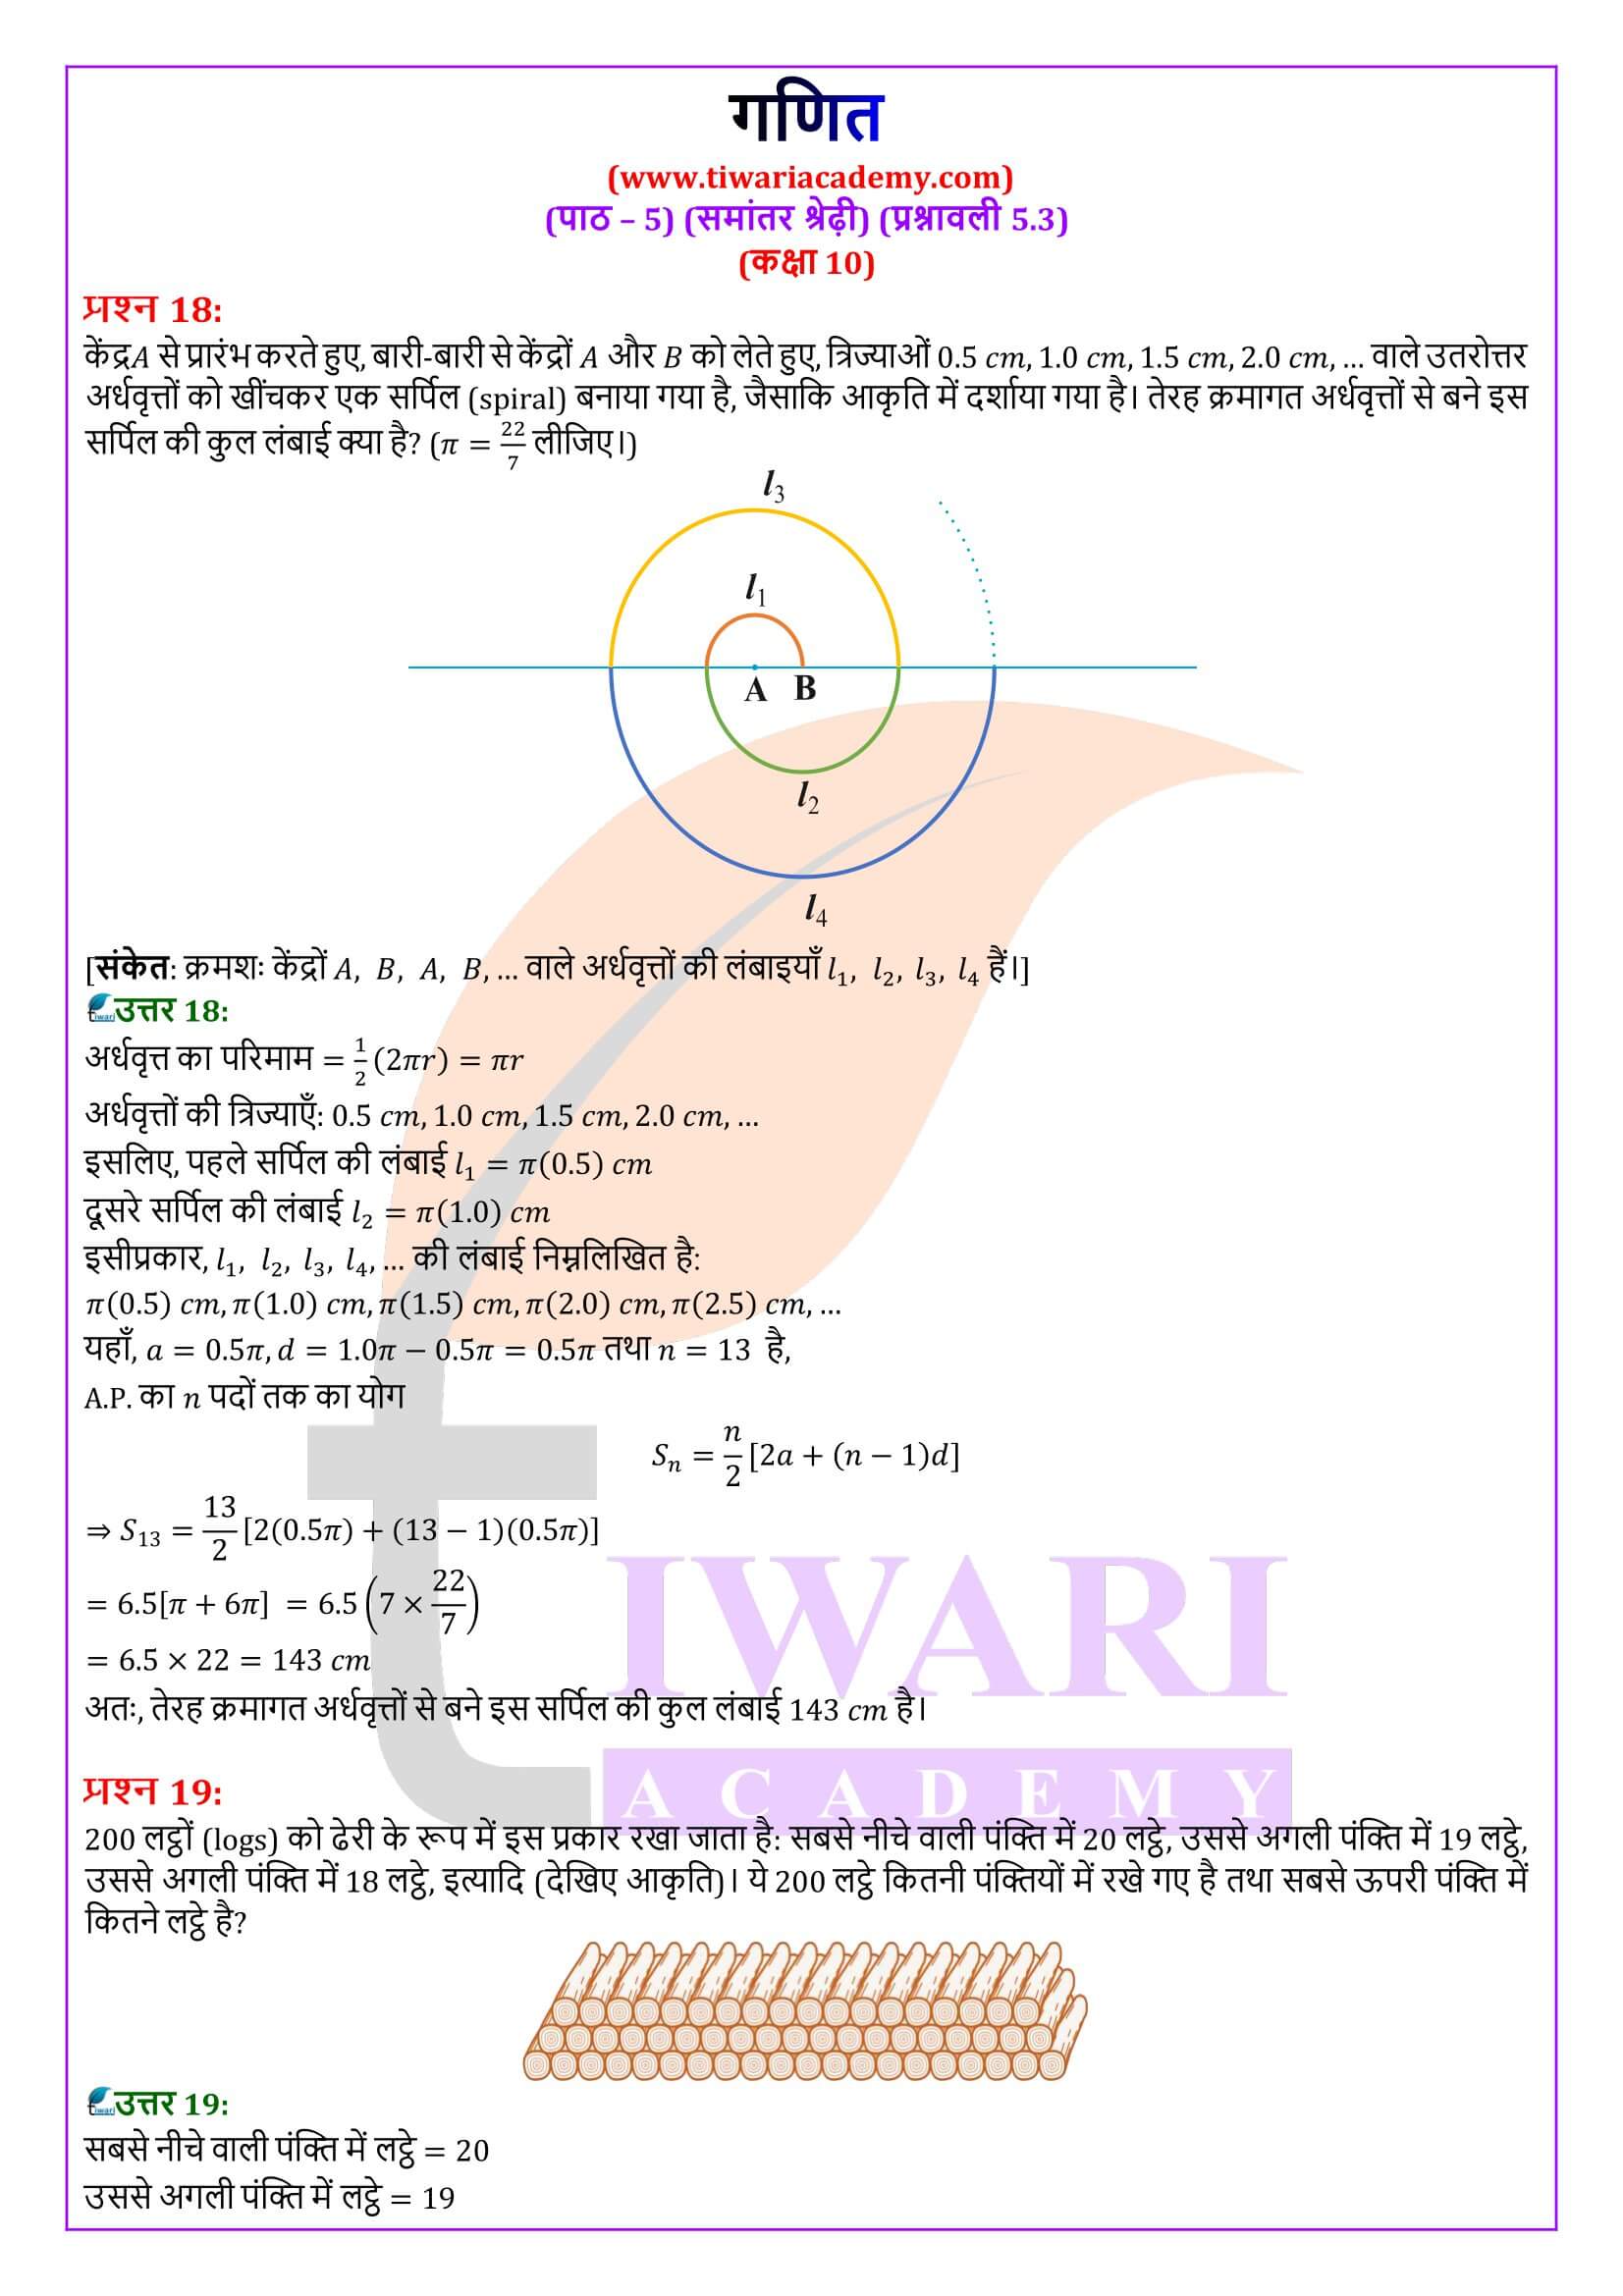 कक्षा 10 गणित प्रश्नावली 5.3 के हल हिंदी में